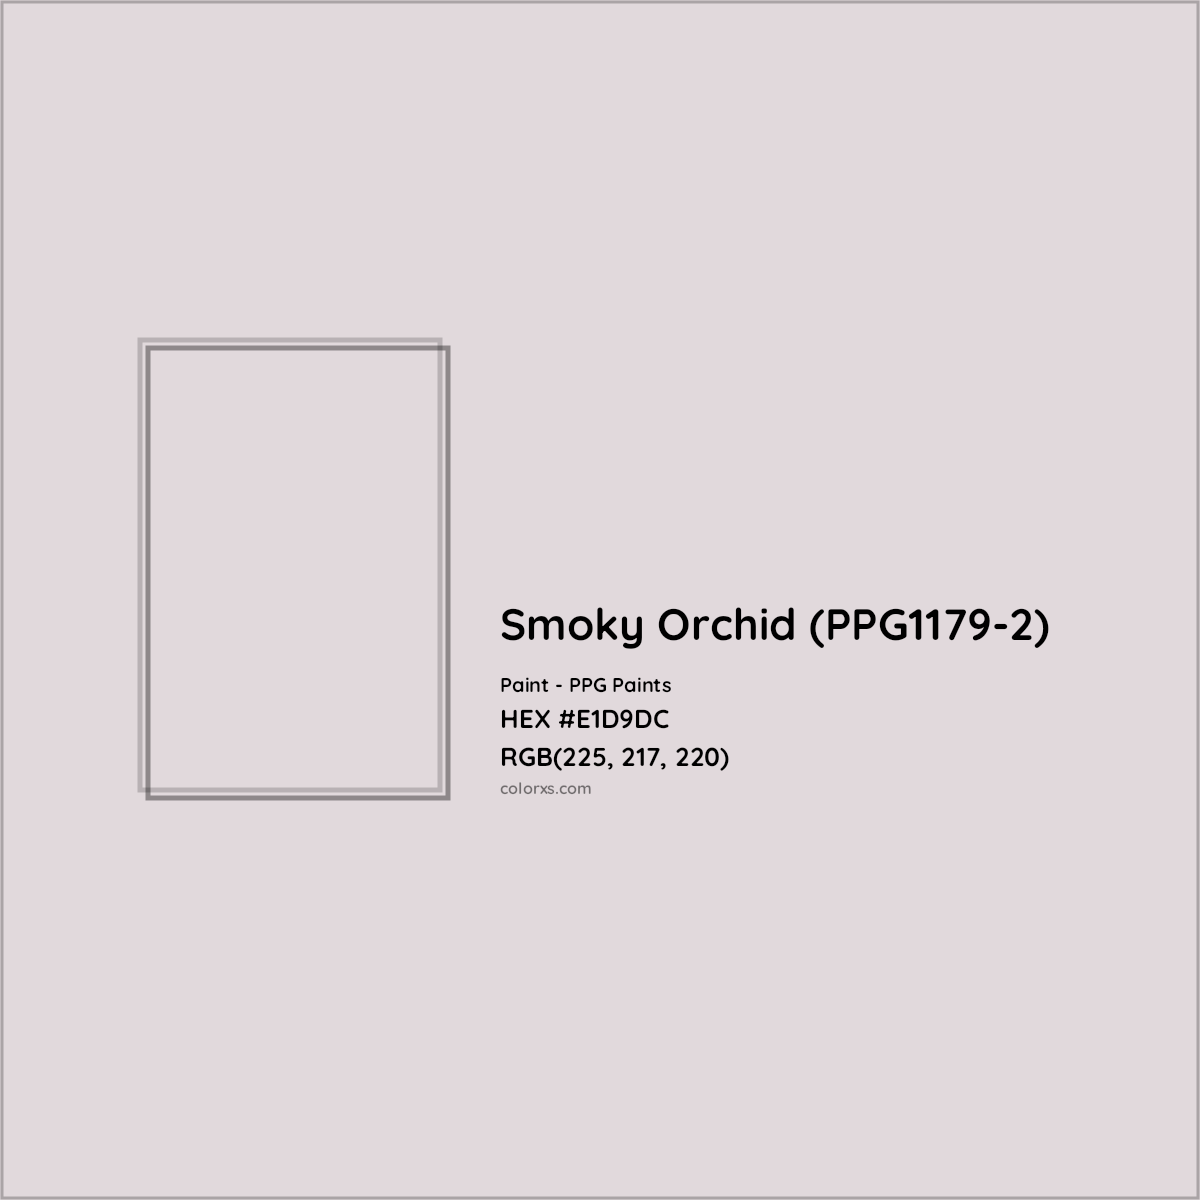 HEX #E1D9DC Smoky Orchid (PPG1179-2) Paint PPG Paints - Color Code